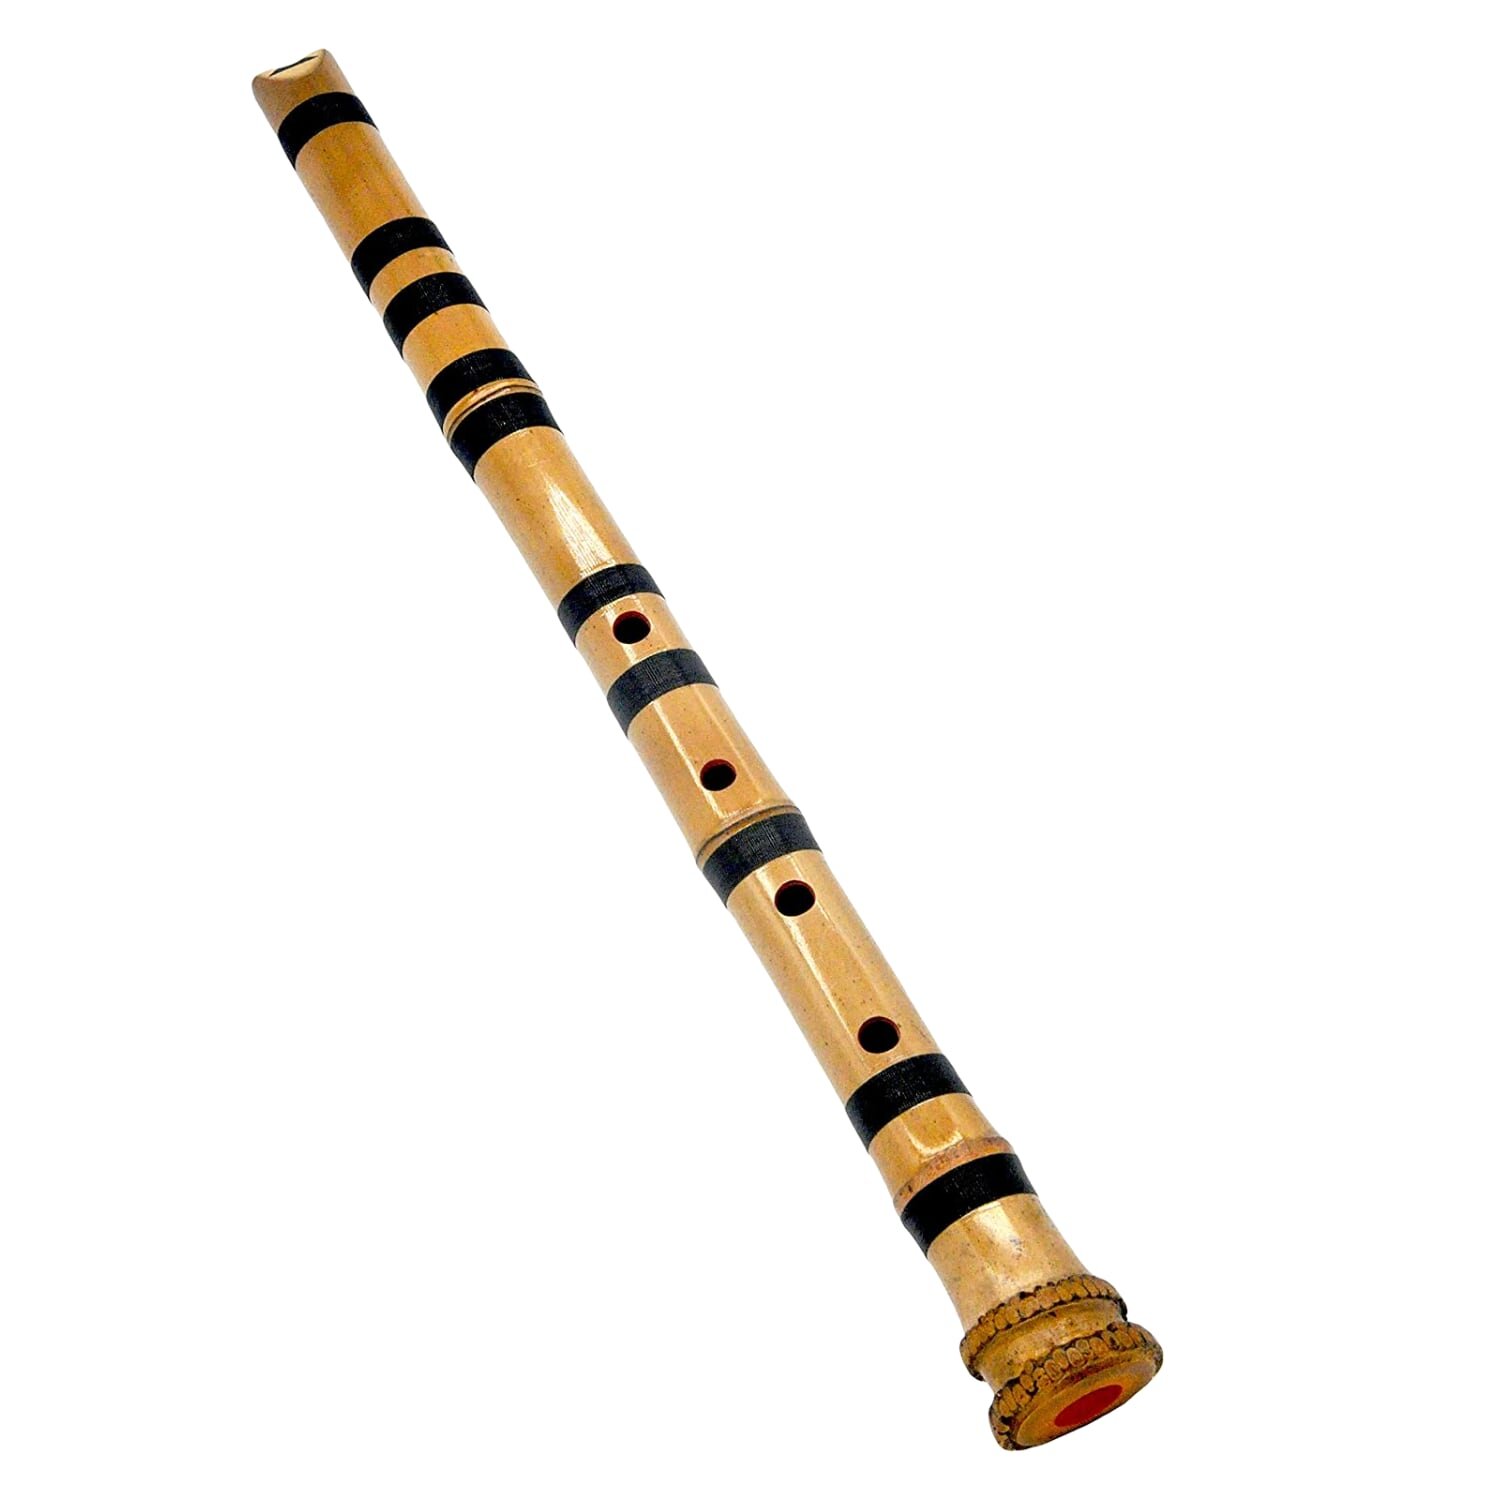 竹笛